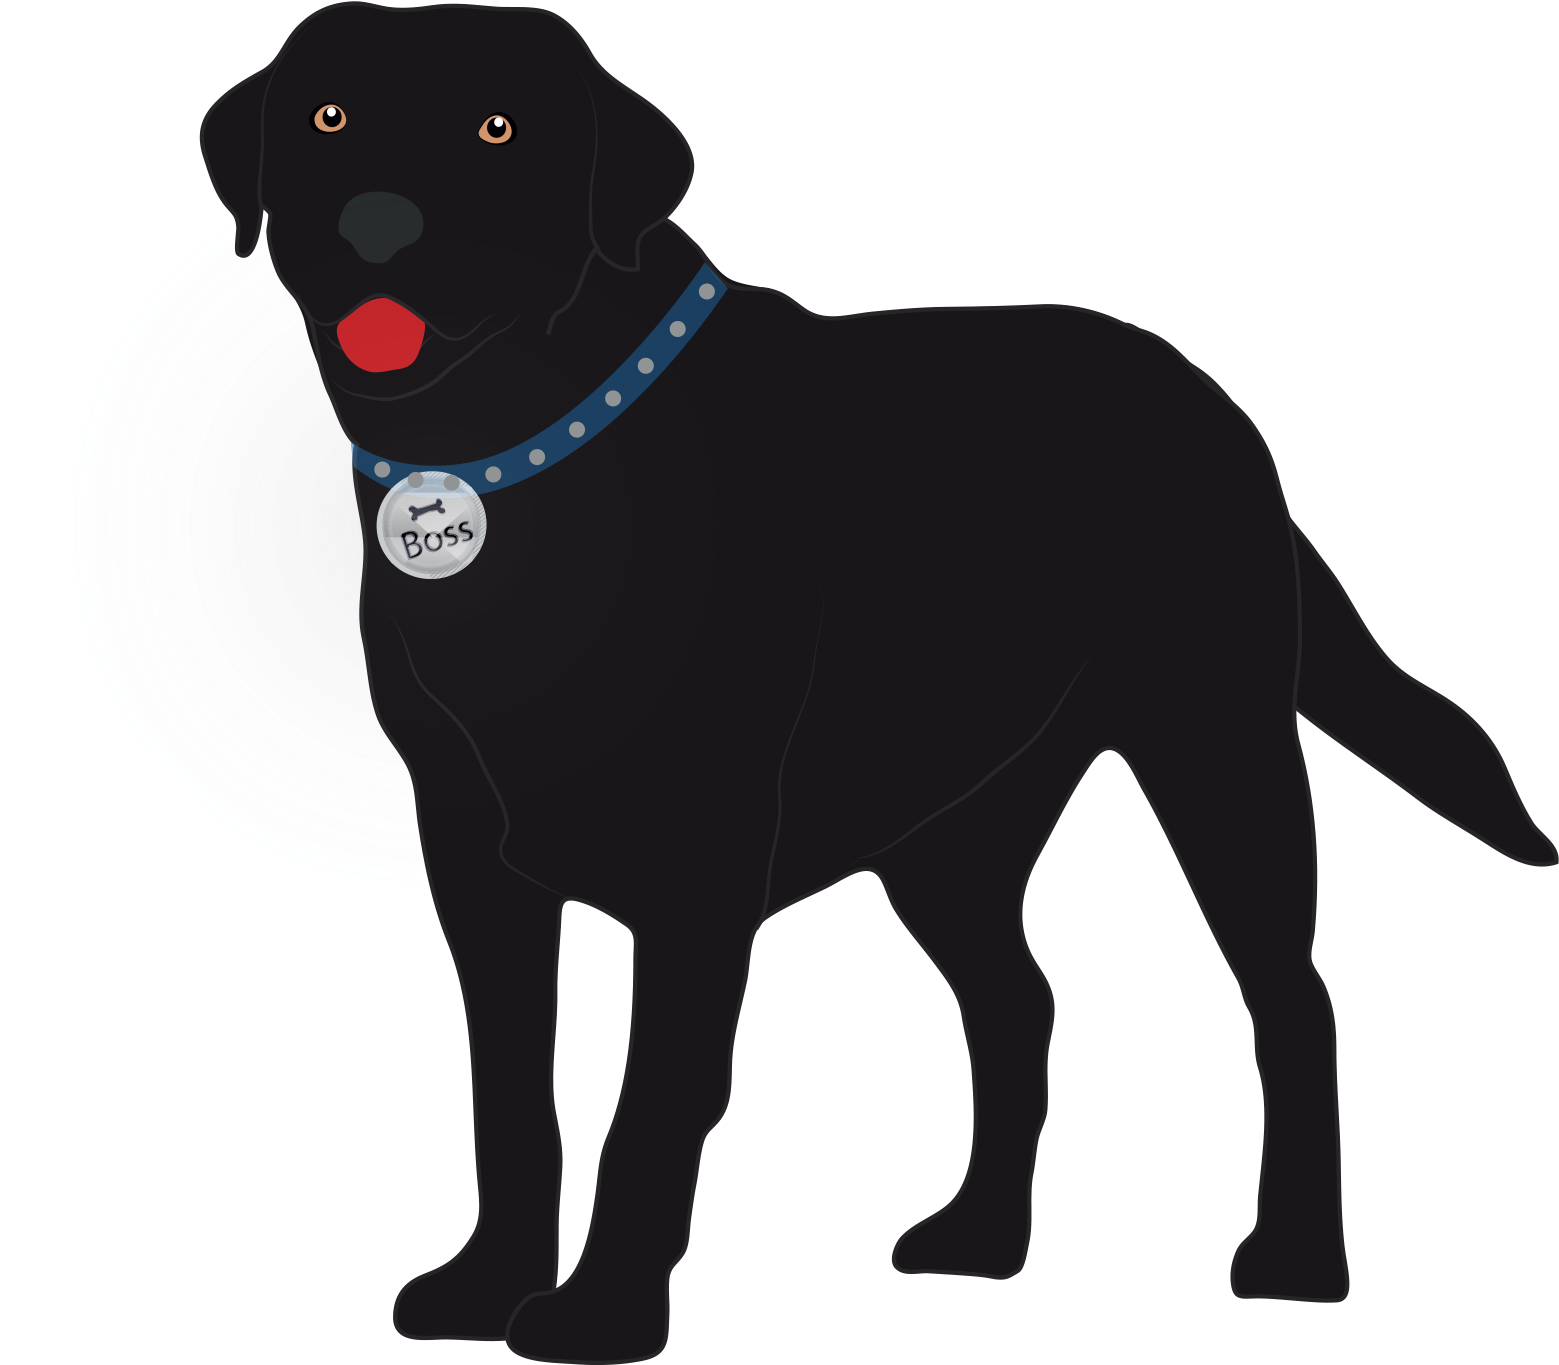 Big Boss, 3, Is Black Labrador Show Dog - Labrador Retriever Clipart (1616x1364), Png Download